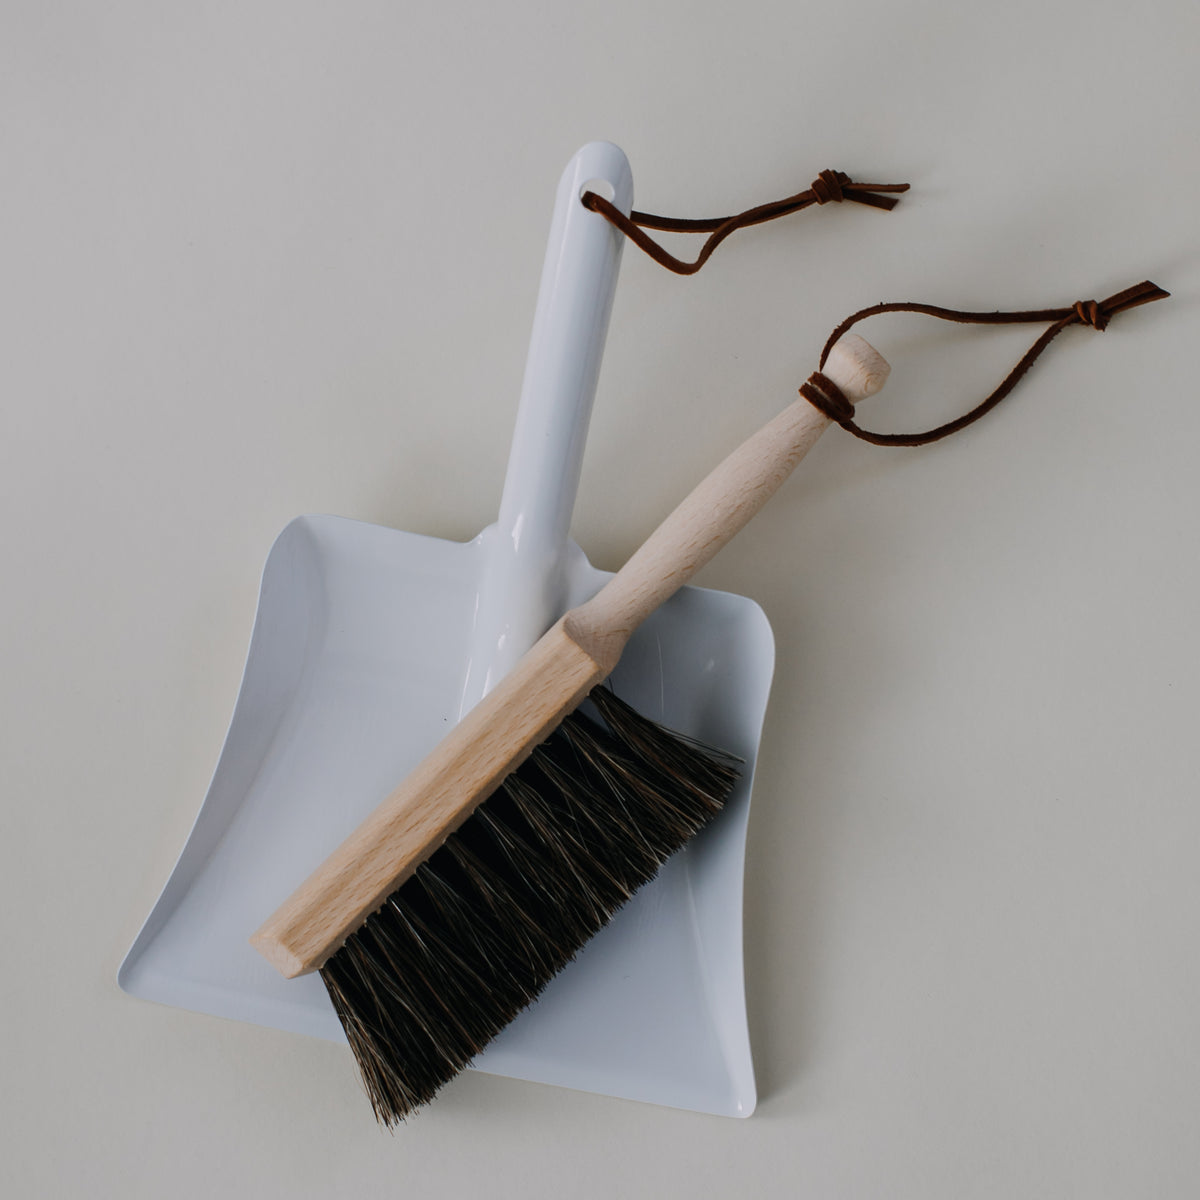 children's broom and dustpan set